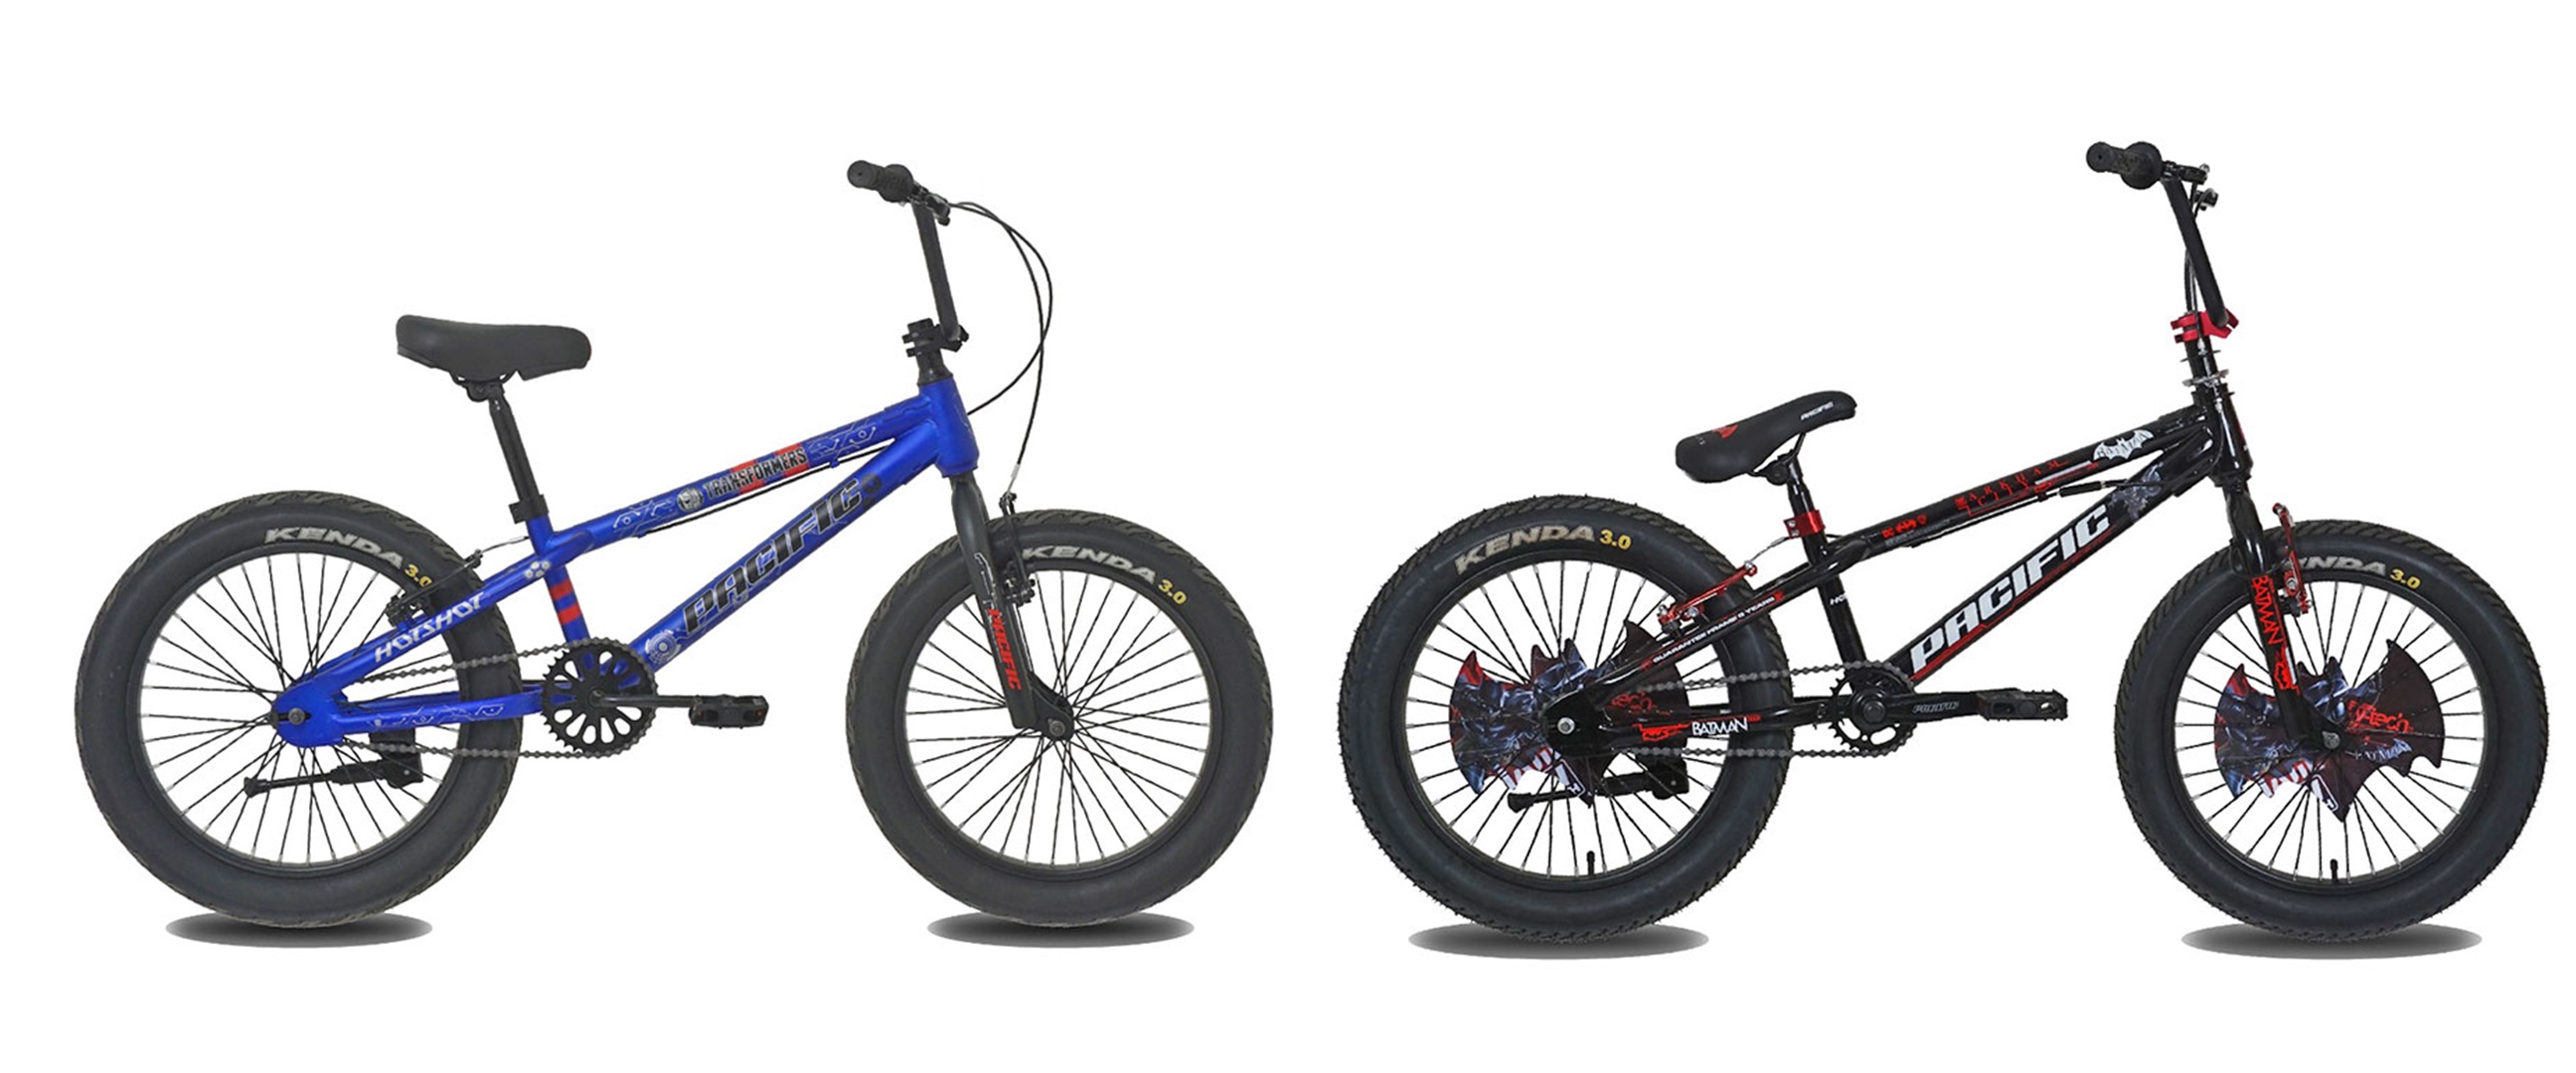 Harga sepeda BMX Pacific Hotshot dan spesifikasi, trendy dan andal